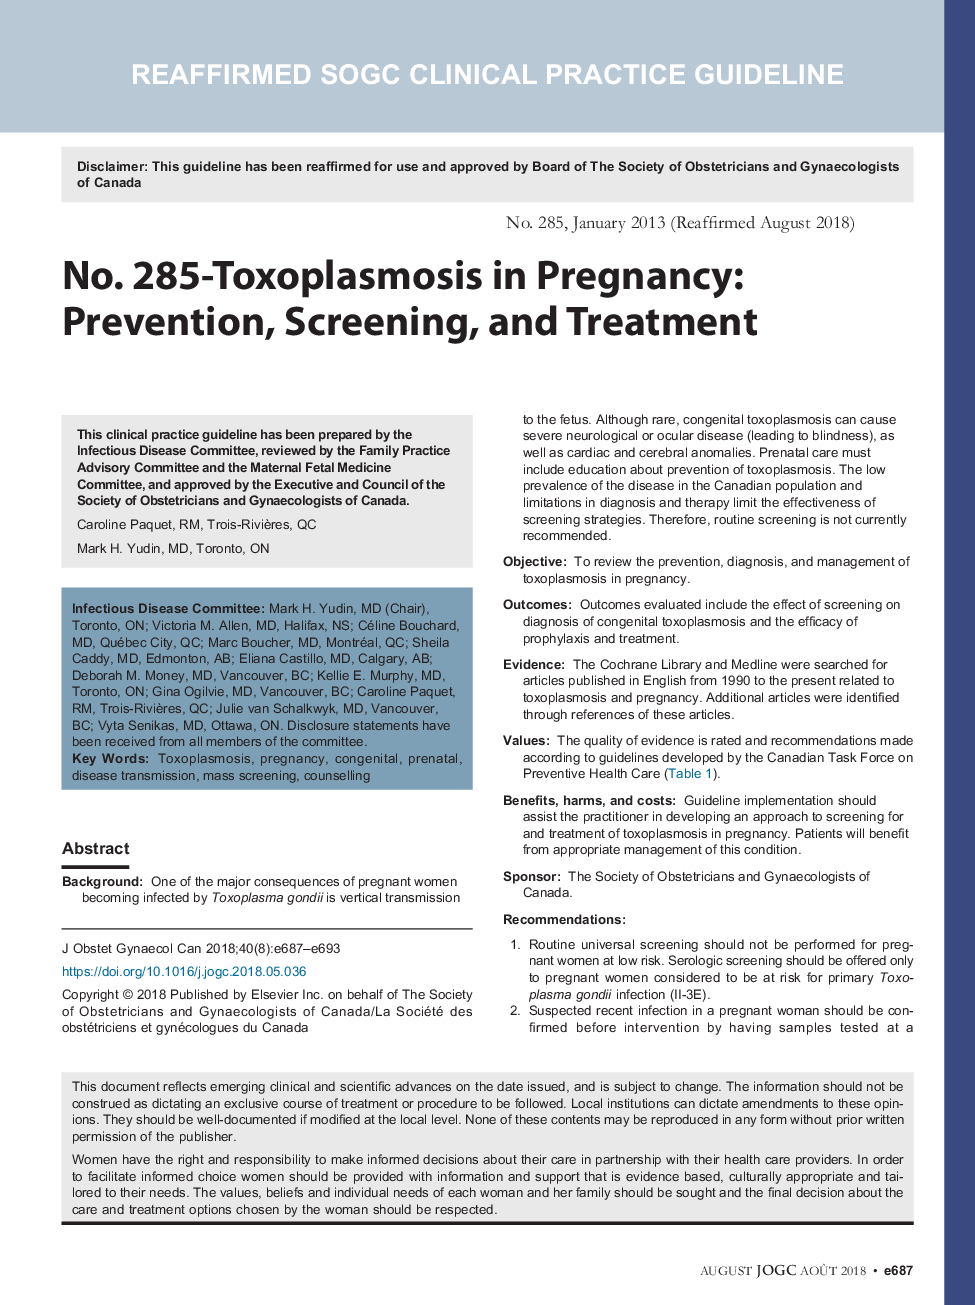 شماره 285-توکسوپلاسموز در بارداری: پیشگیری، غربالگری و درمان 